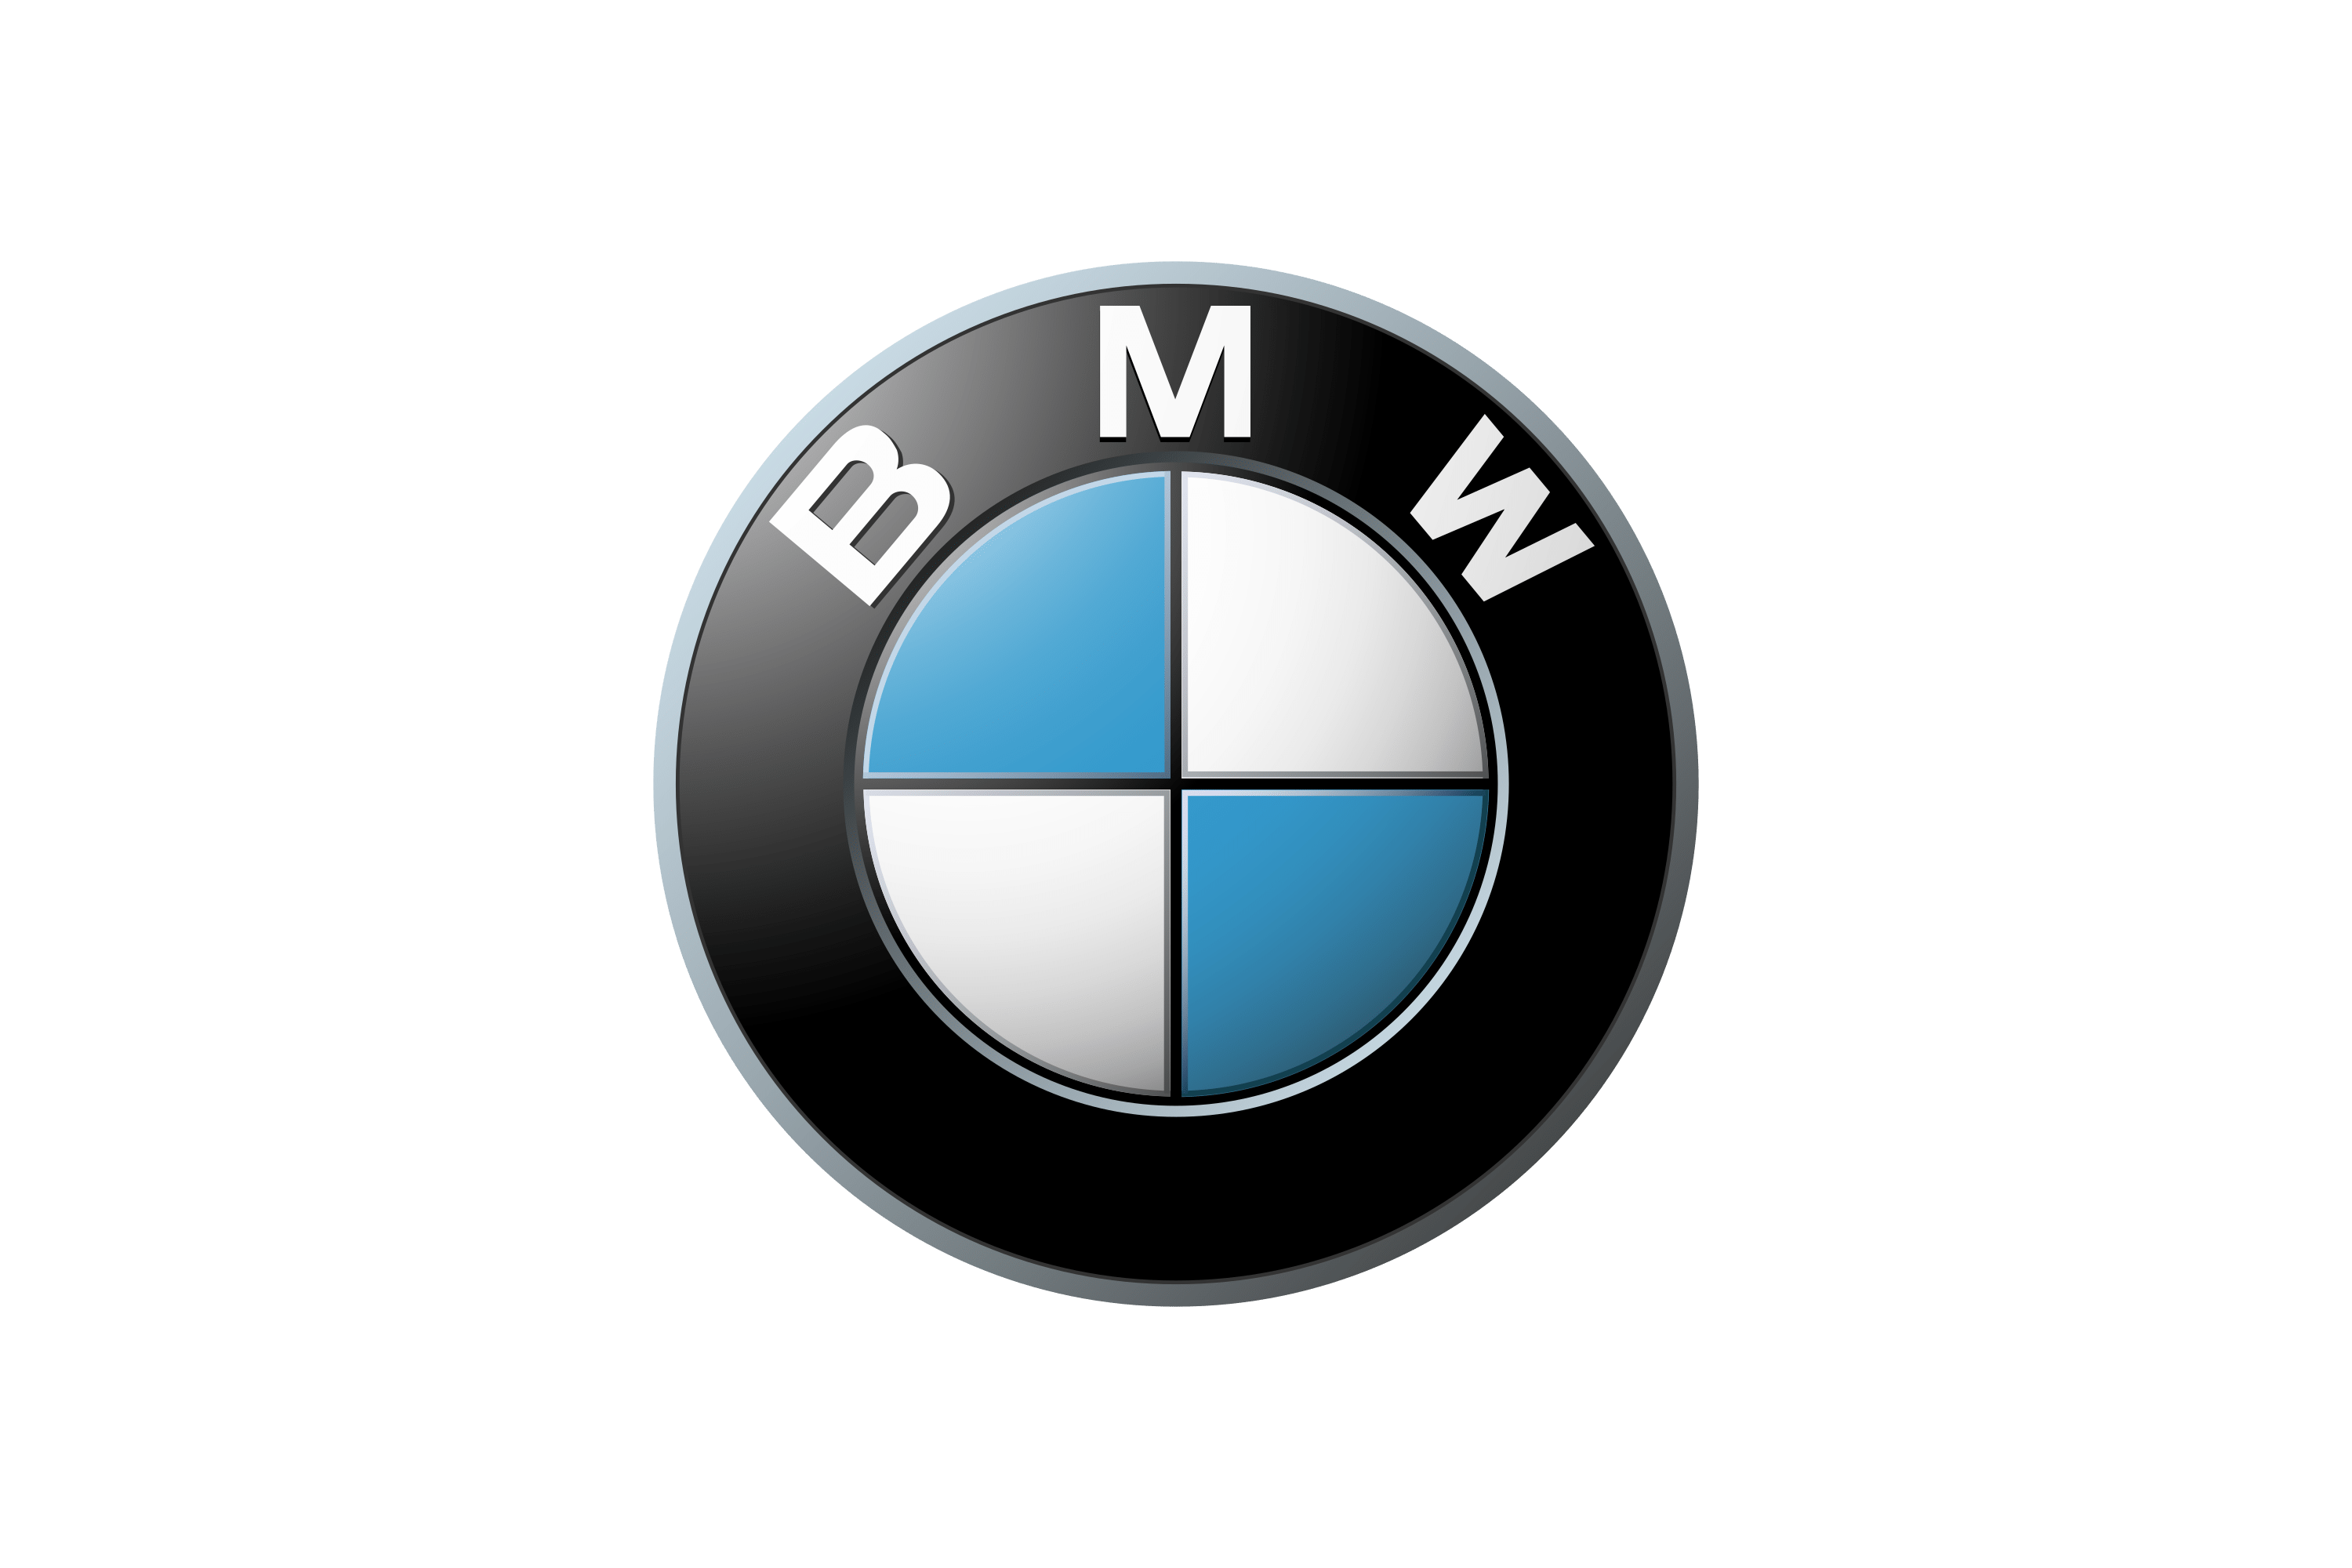 Download BMW Motorrad Logo in SVG Vector or PNG File Format 